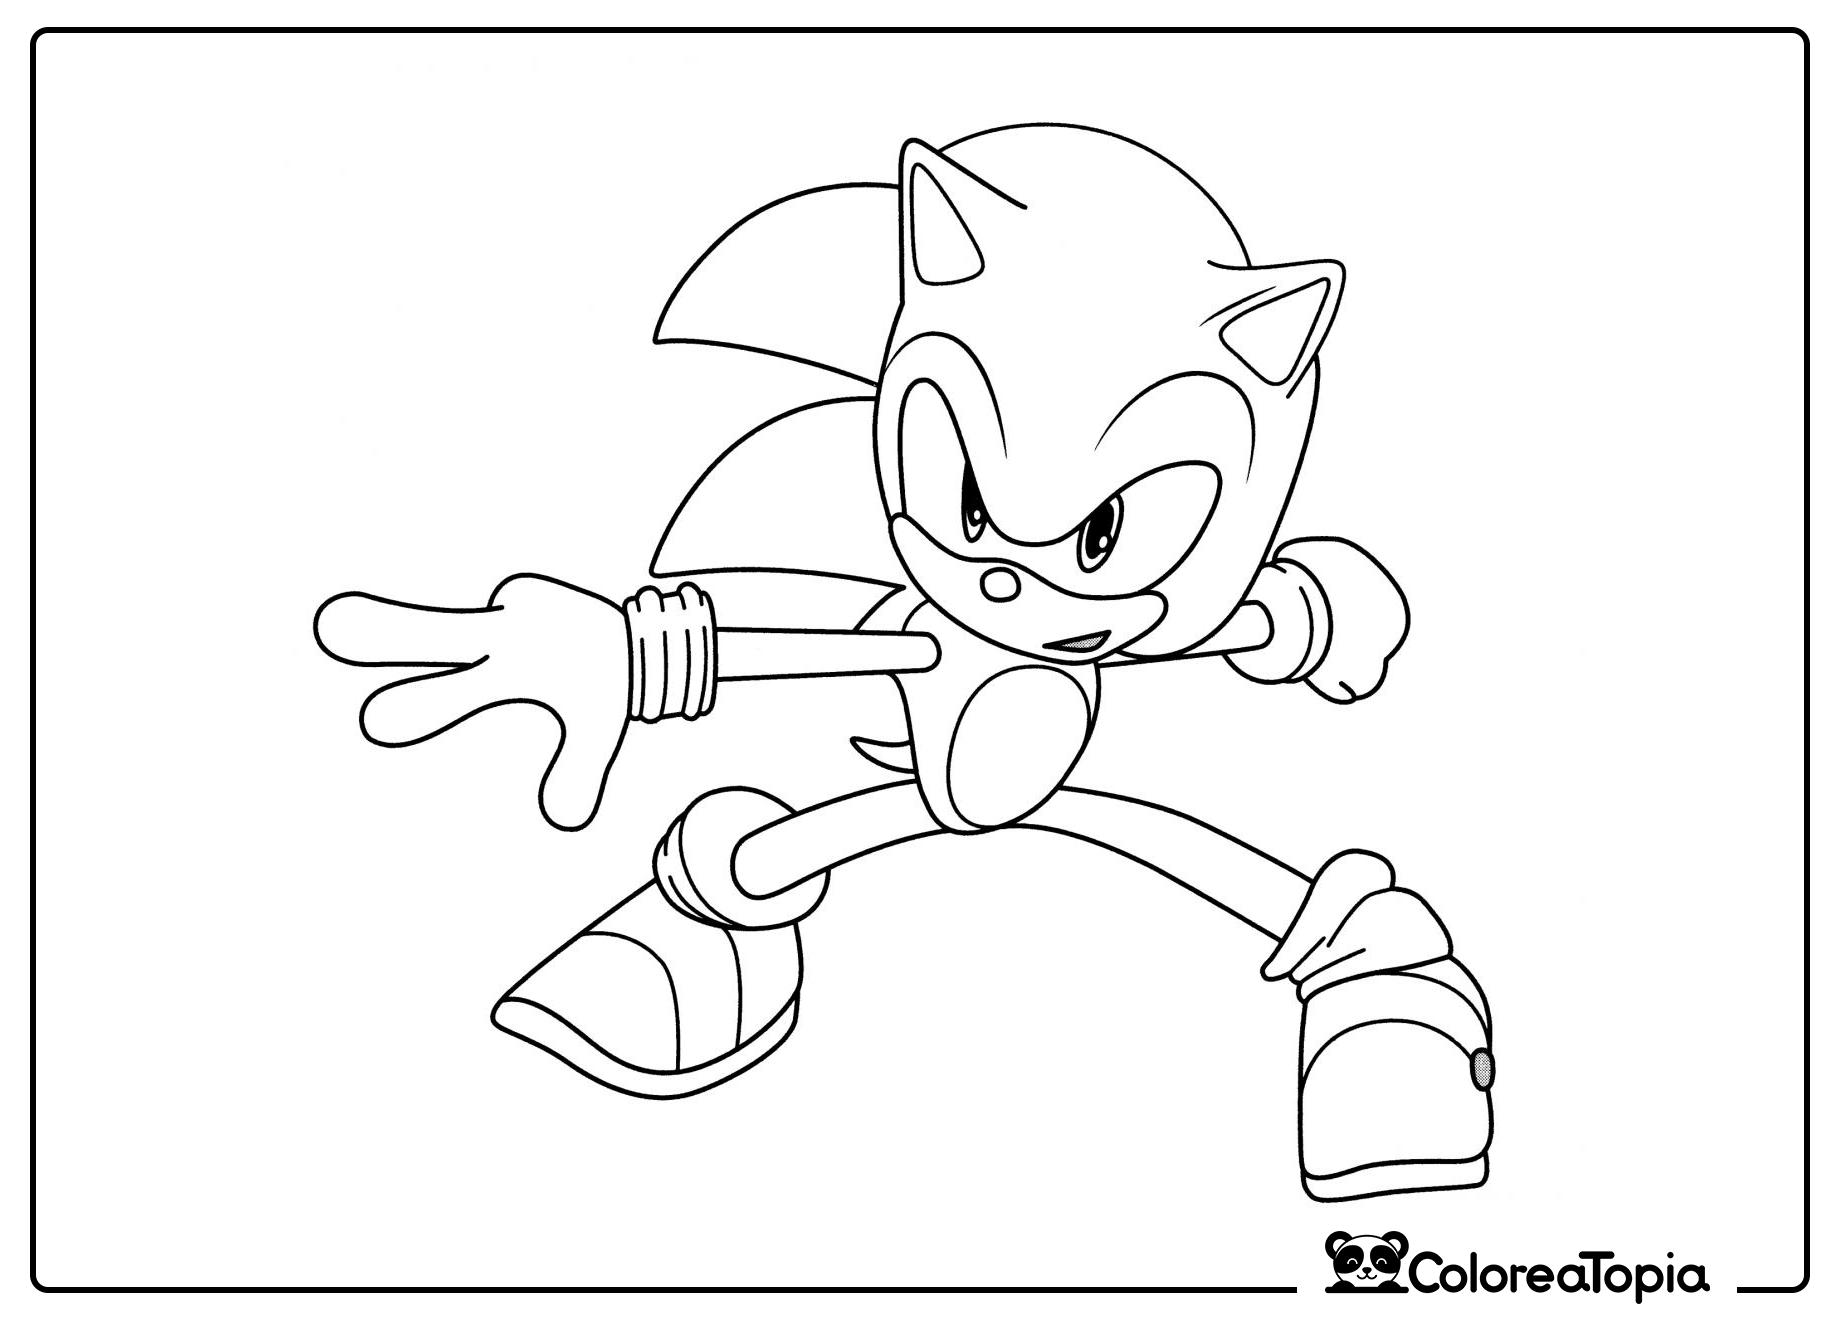 Sonic en posición de combate - dibujo para colorear